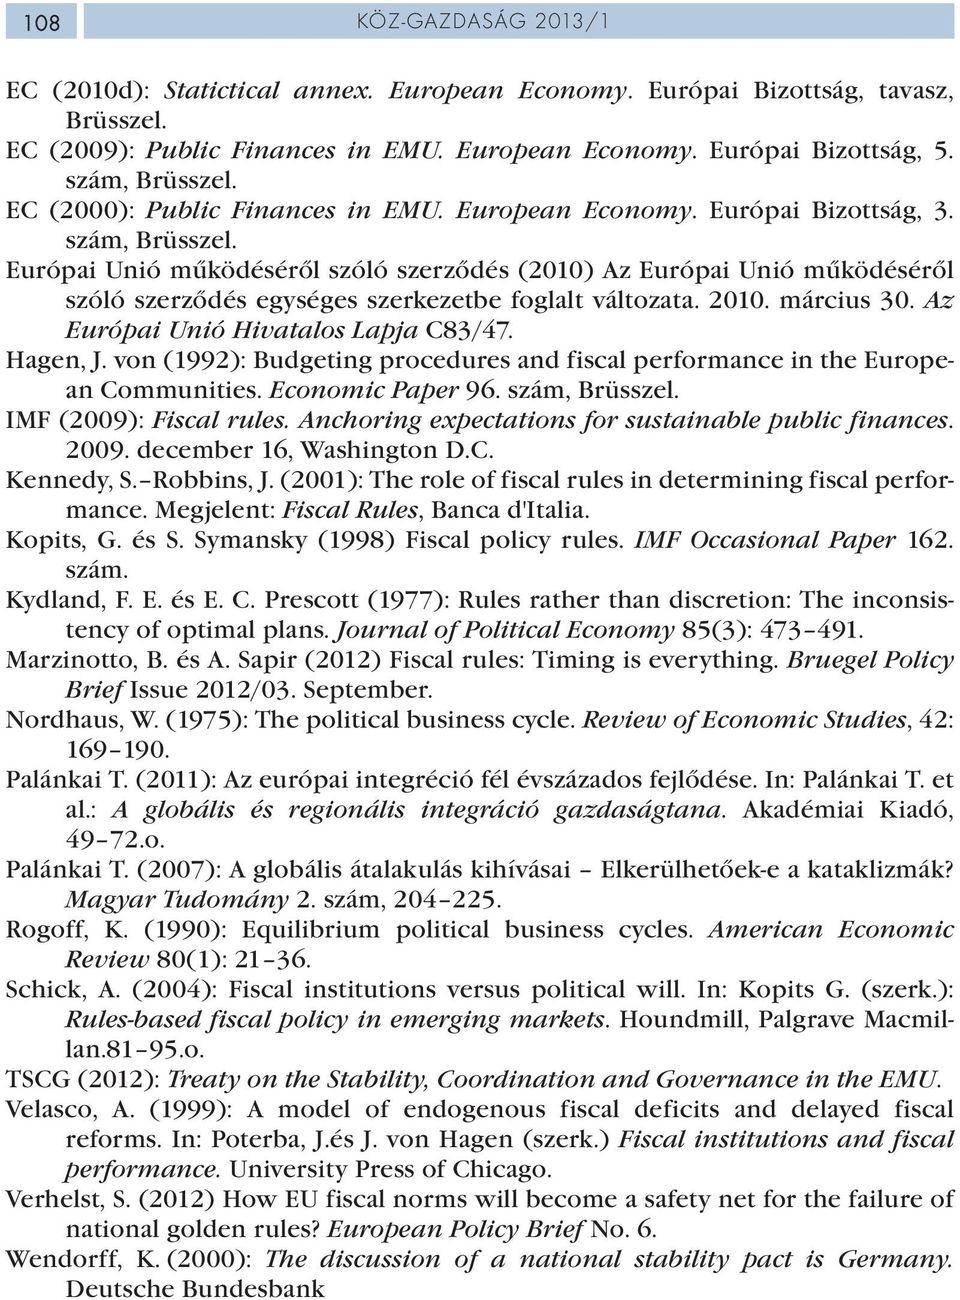 Európai Unió működéséről szóló szerződés (2010) Az Európai Unió működéséről szóló szerződés egységes szerkezetbe foglalt változata. 2010. március 30. Az Európai Unió Hivatalos Lapja C83/47. Hagen, J.